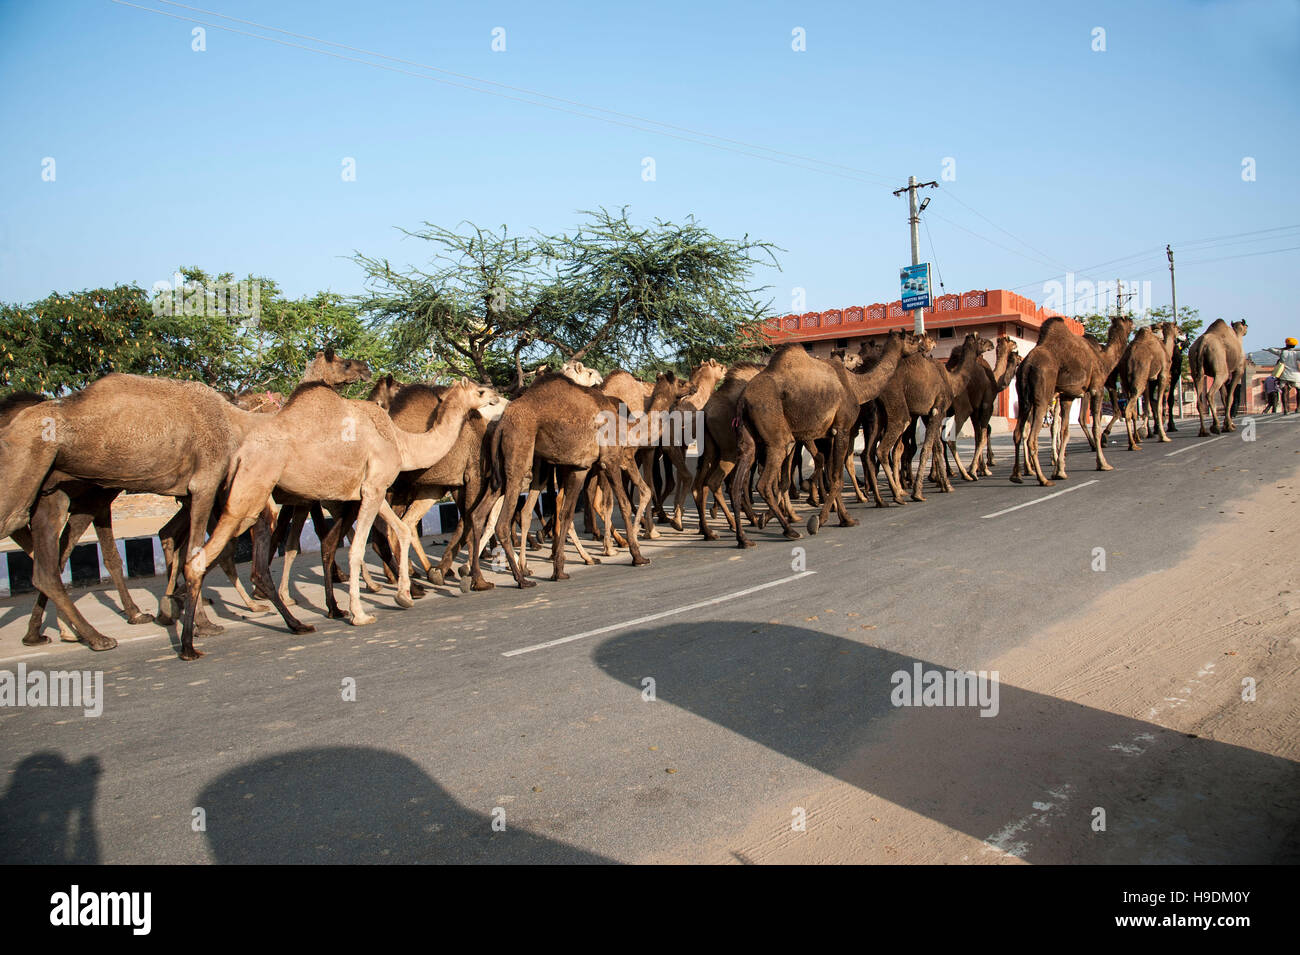 Les chameaux indiennes le long d'une route à la Camel Fair de Pushkar Rajasthan Inde Banque D'Images